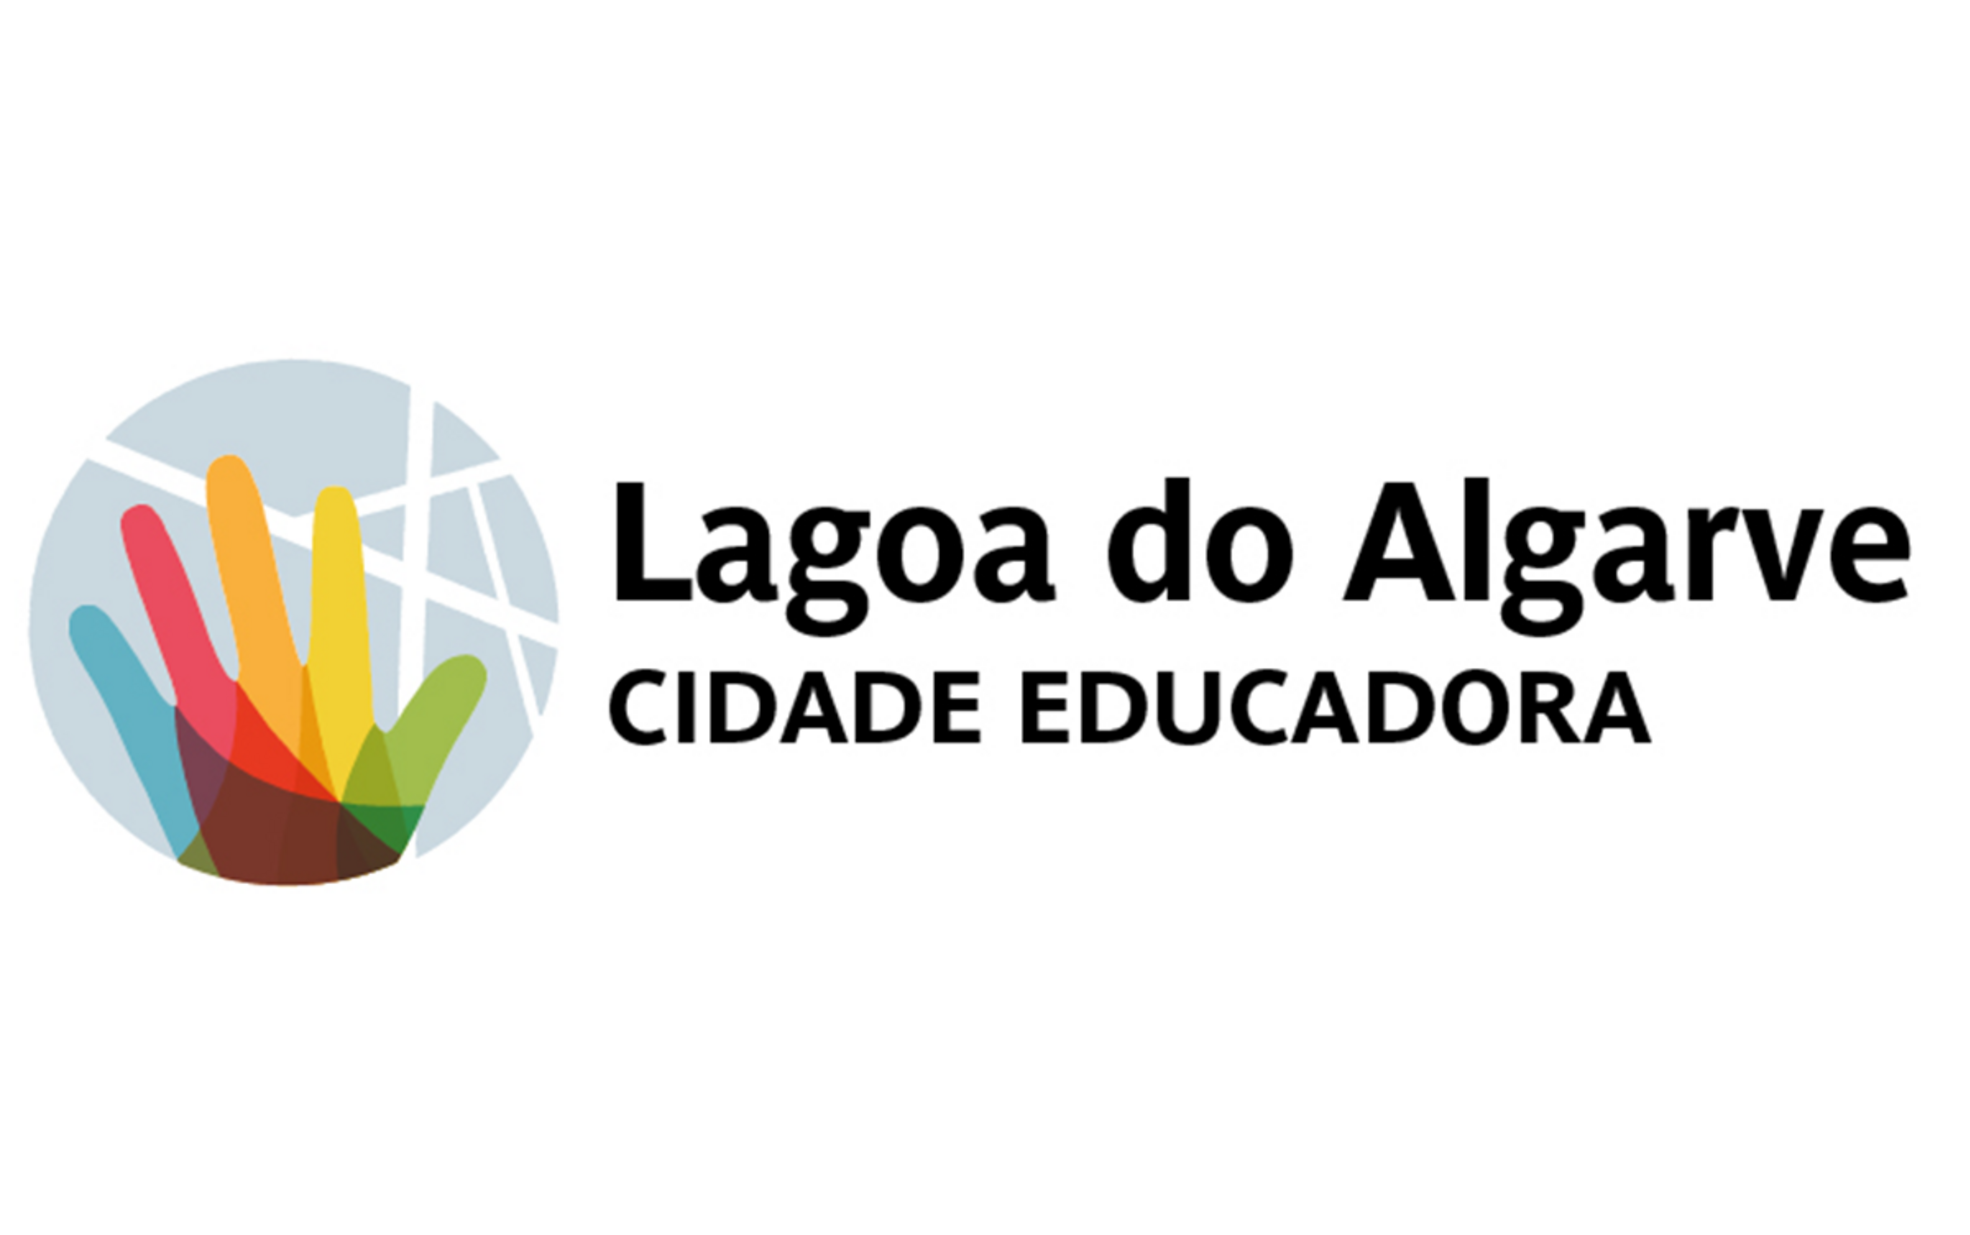 Lagoa investiu cerca de 3,5 milhões na educação em 2022